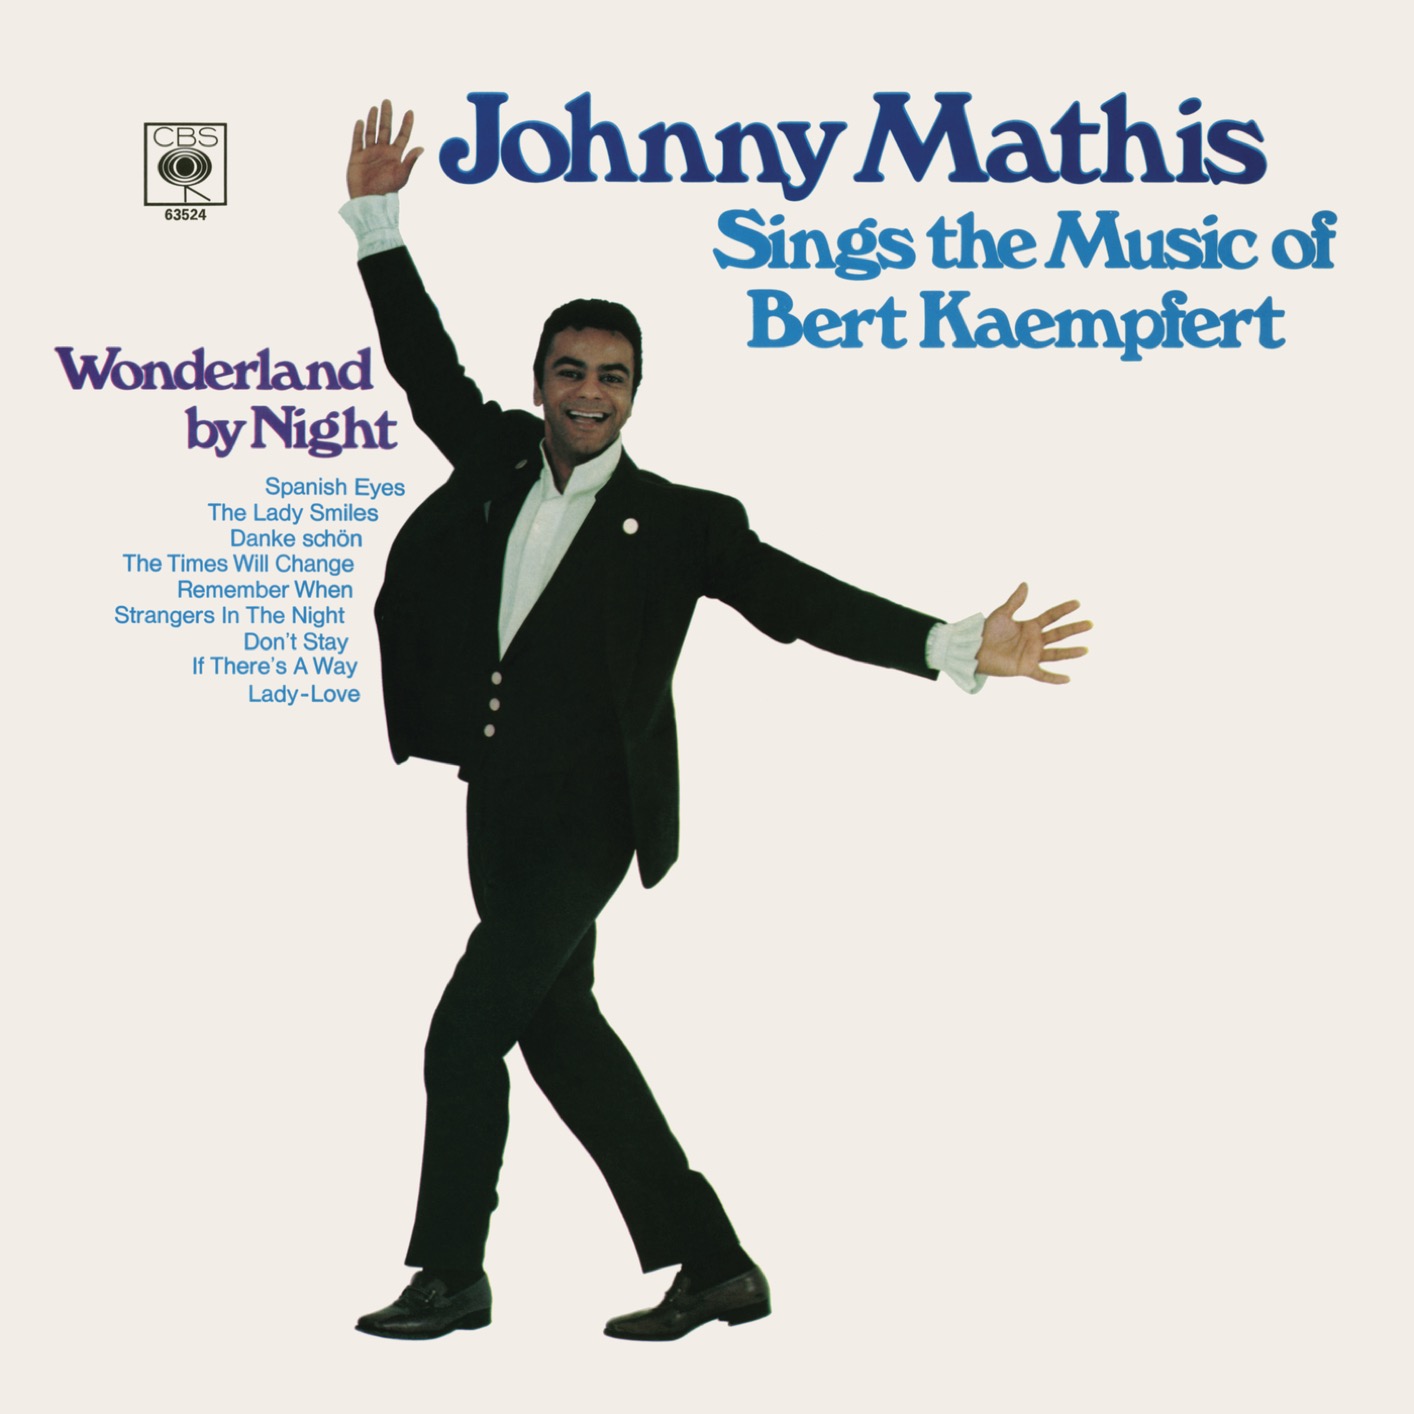 Johnny Mathis - Sings the Music of Bert Kaempfert (1969/2018) [FLAC 24bit/96kHz]